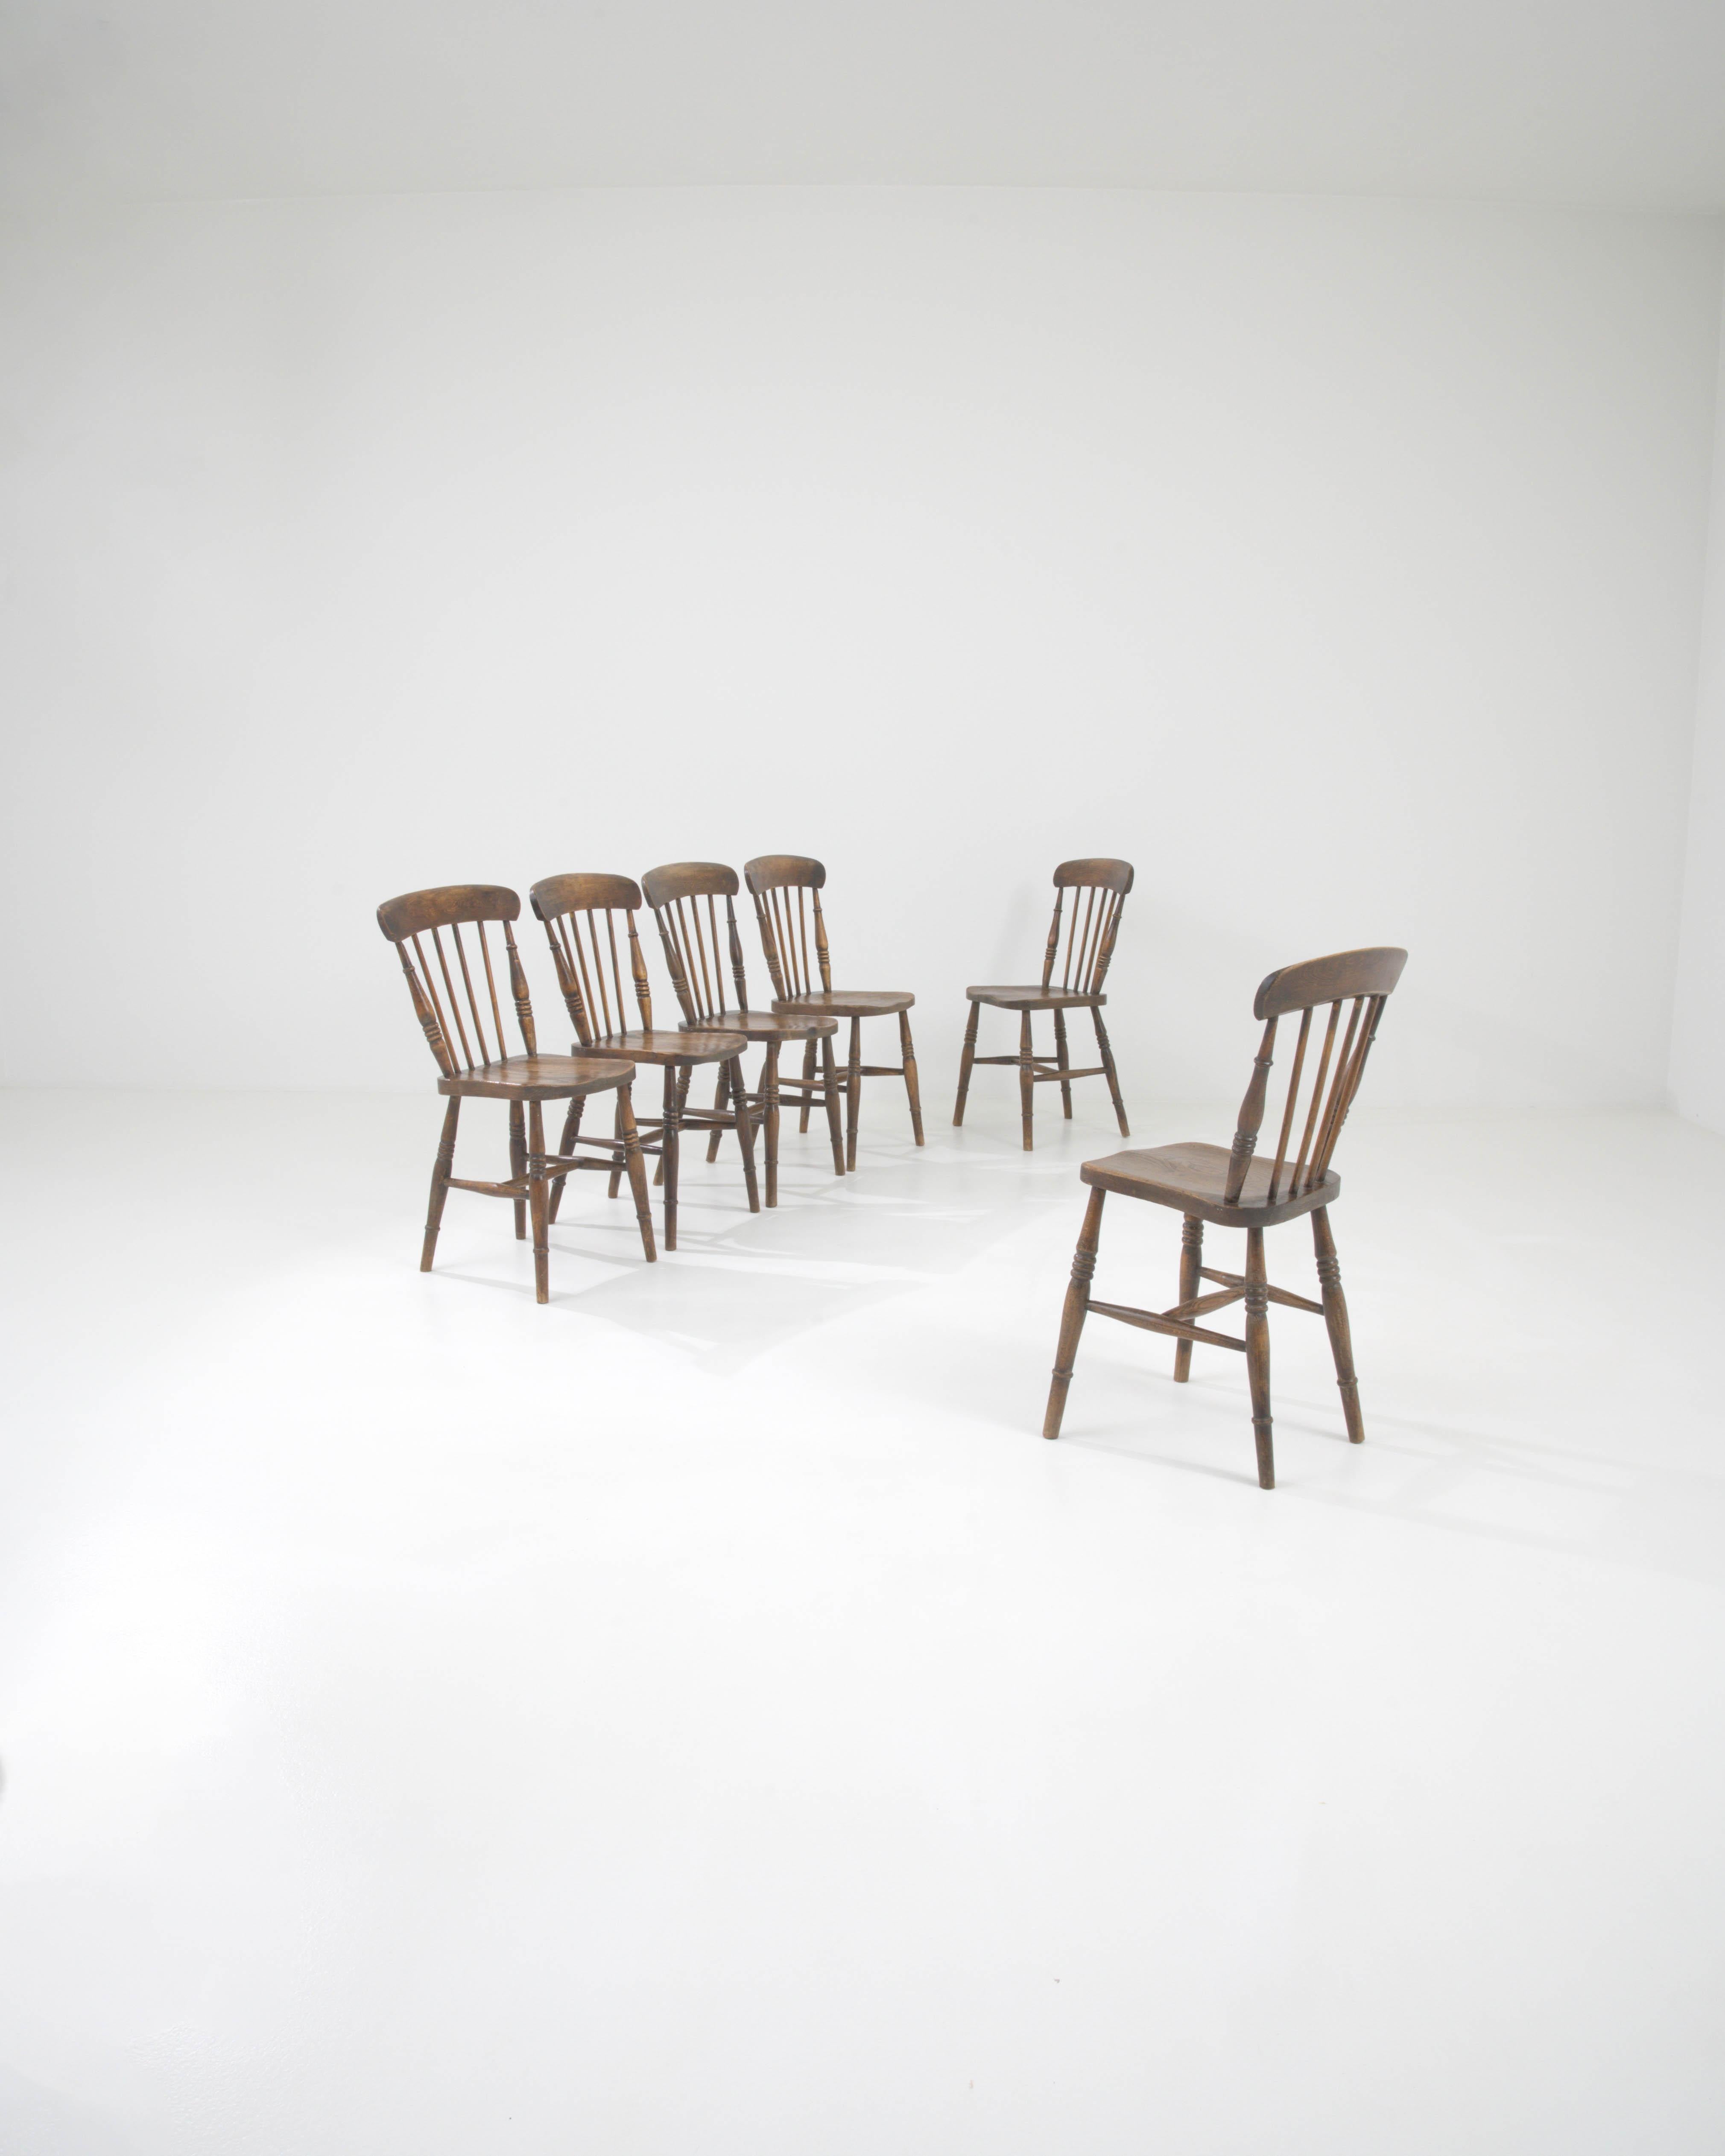 Cet ensemble exquis de chaises de salle à manger en bois du début du 20e siècle est imprégné des traditions de l'artisanat classique. Chaque chaise de cette collection témoigne d'un design intemporel, avec une traverse supérieure incurvée et des